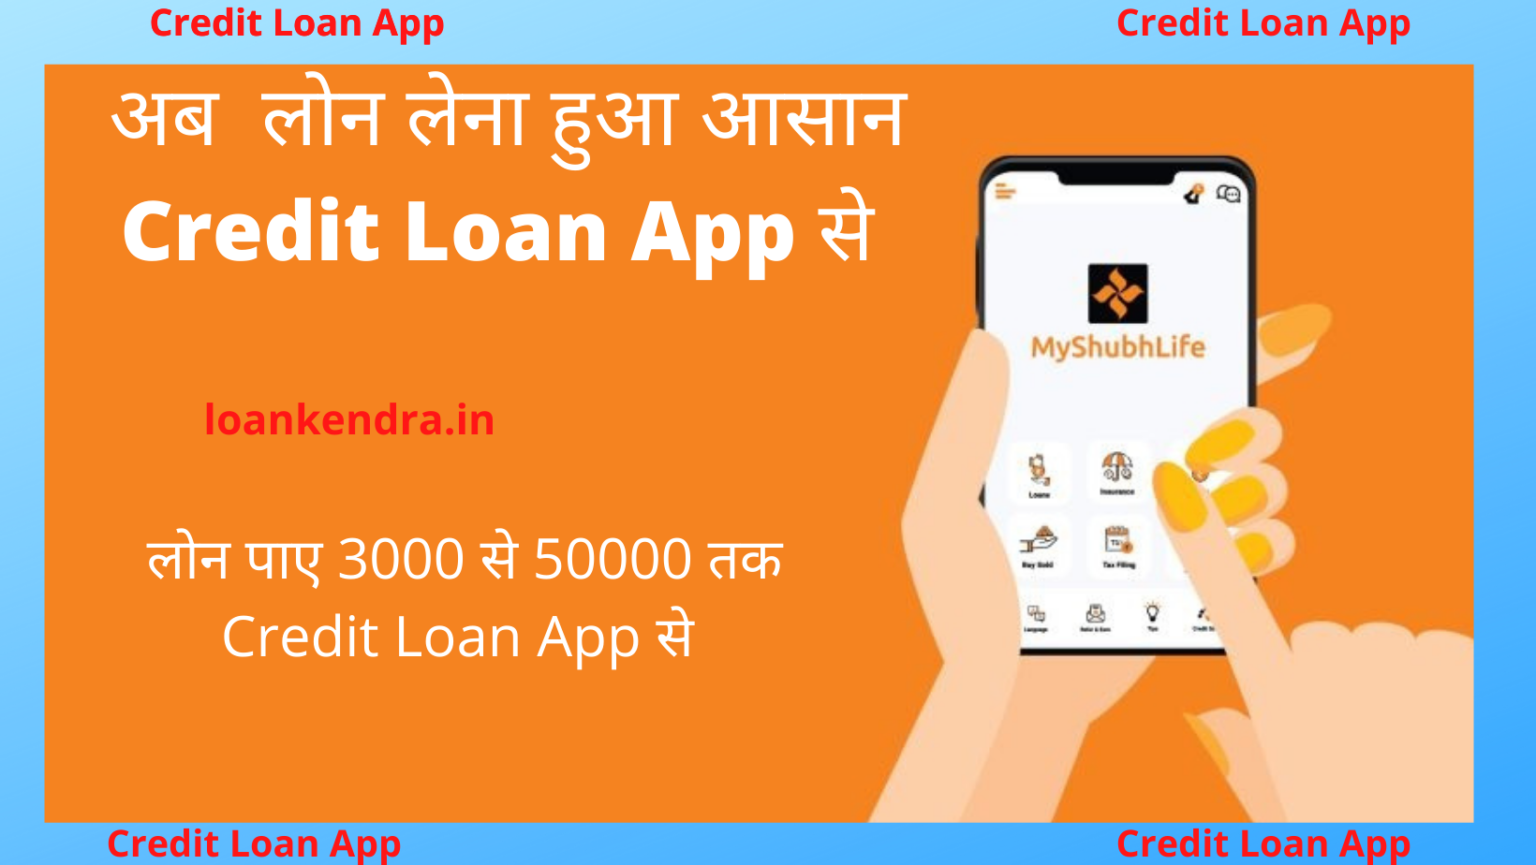 Credit Loan App